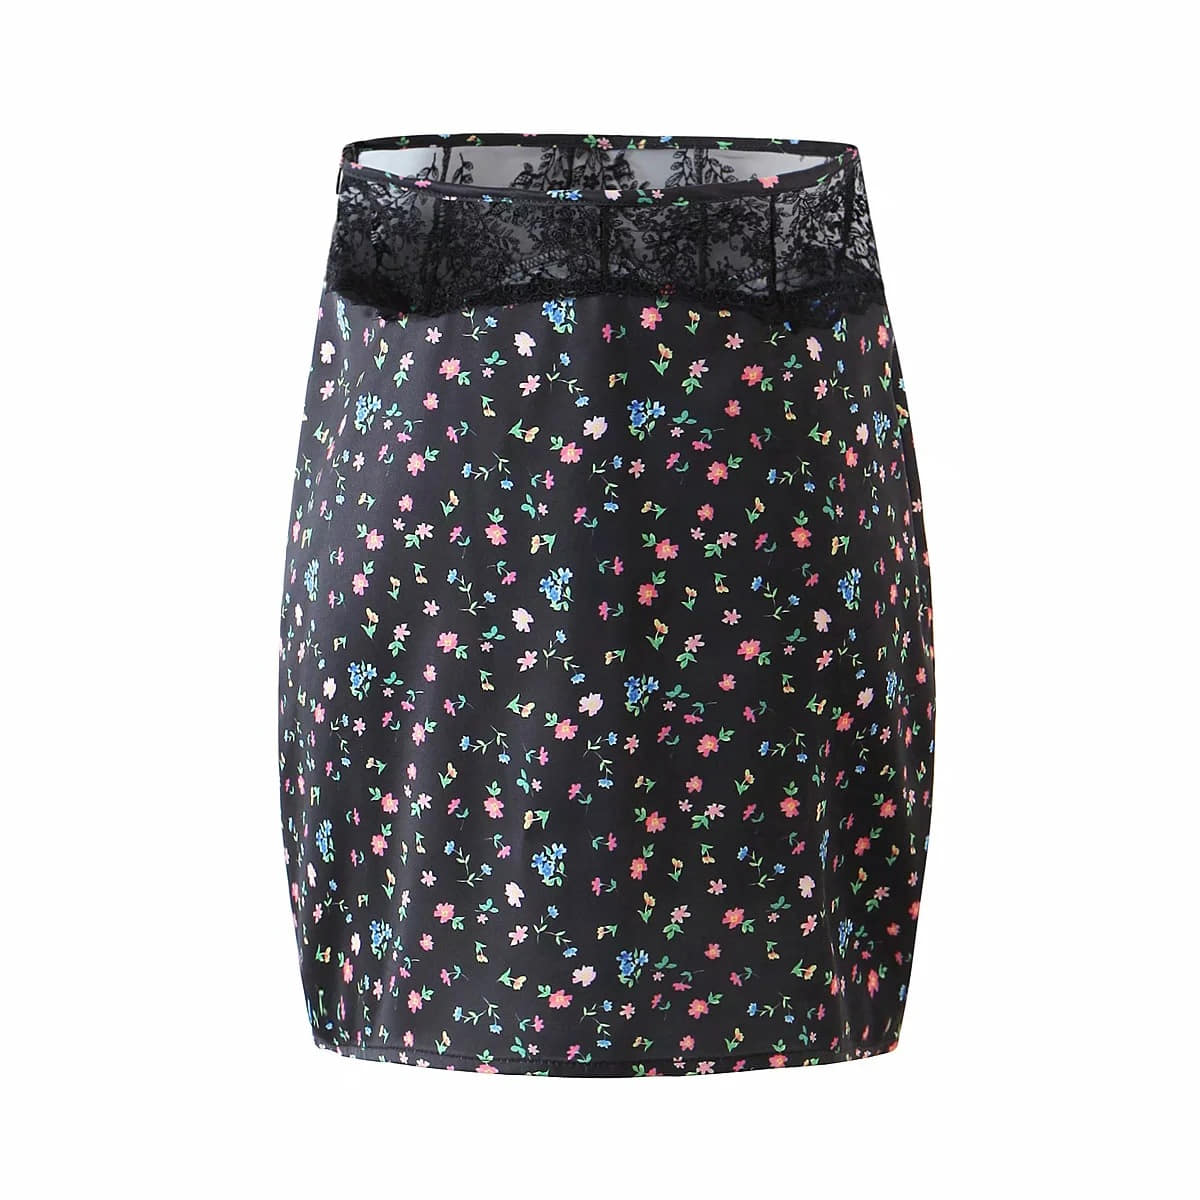 Floral Lace Trim Mini Skirt